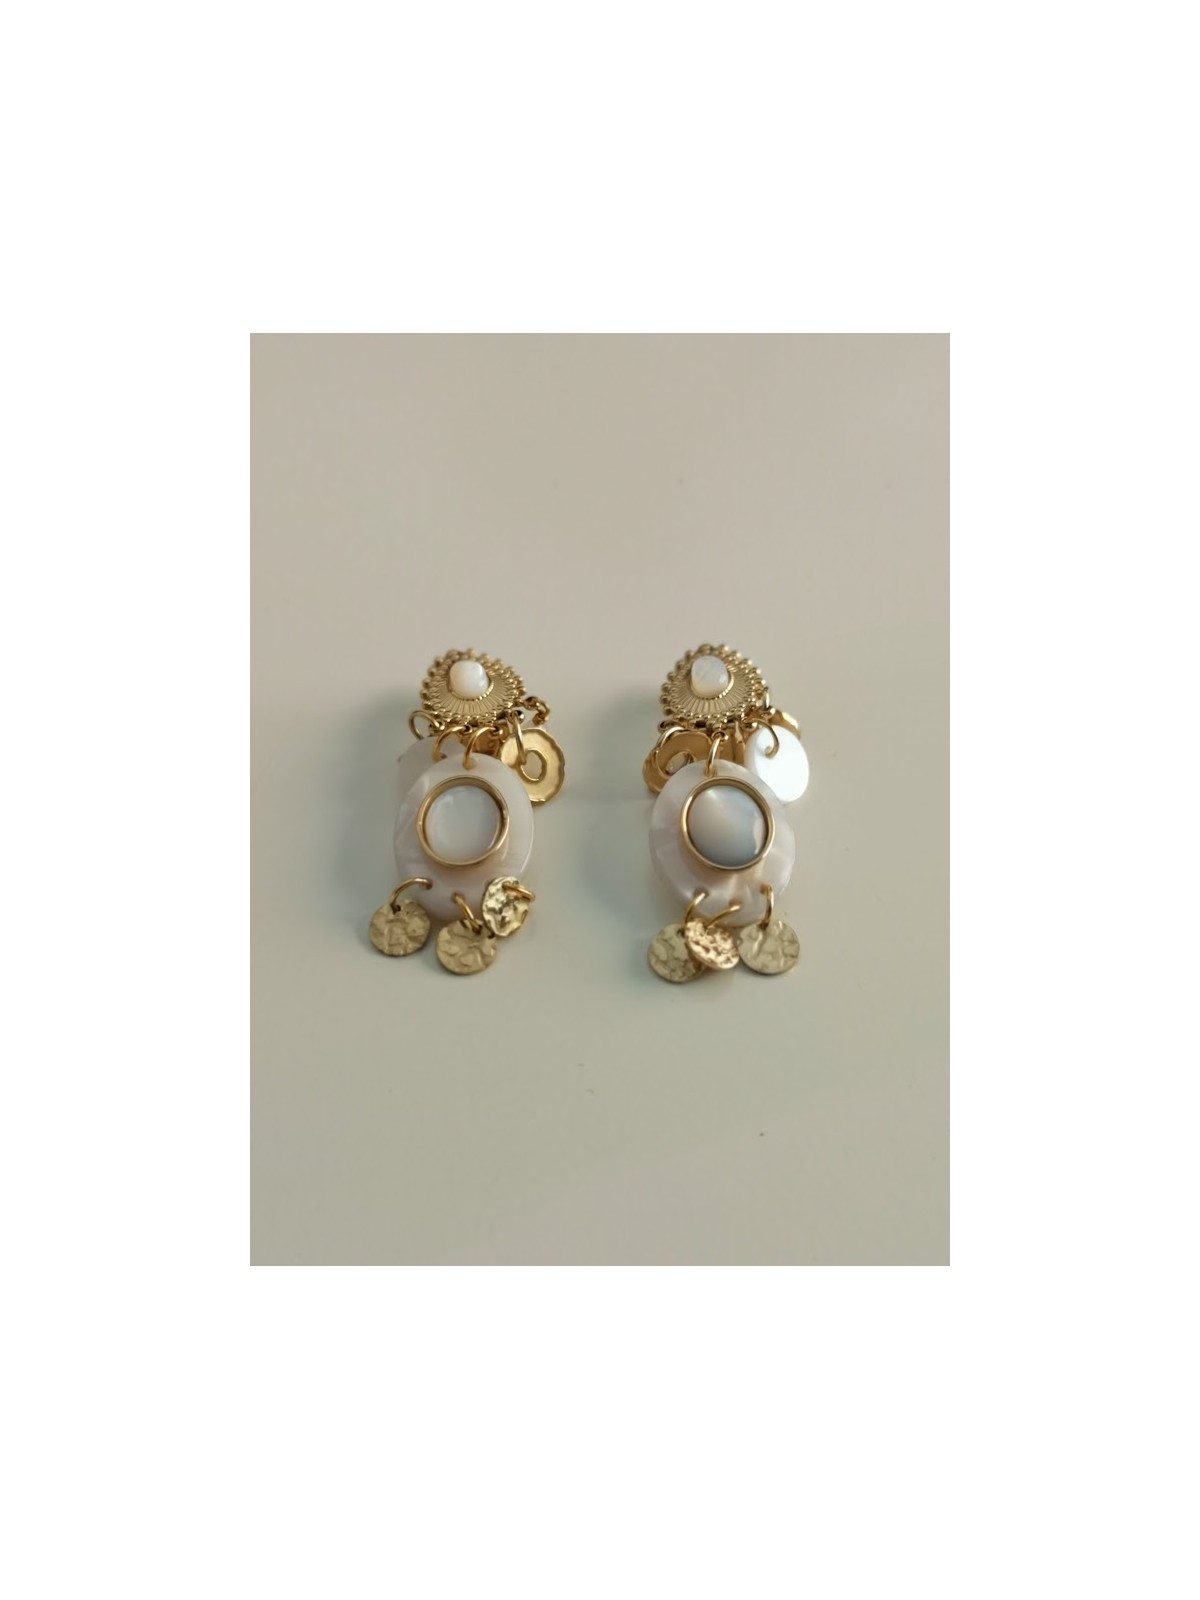 Boucles d'oreilles dorées avec perle blanches au centre l 3 vue seules l Tilleulmenthe mode boutique de vêtements femme en ligne